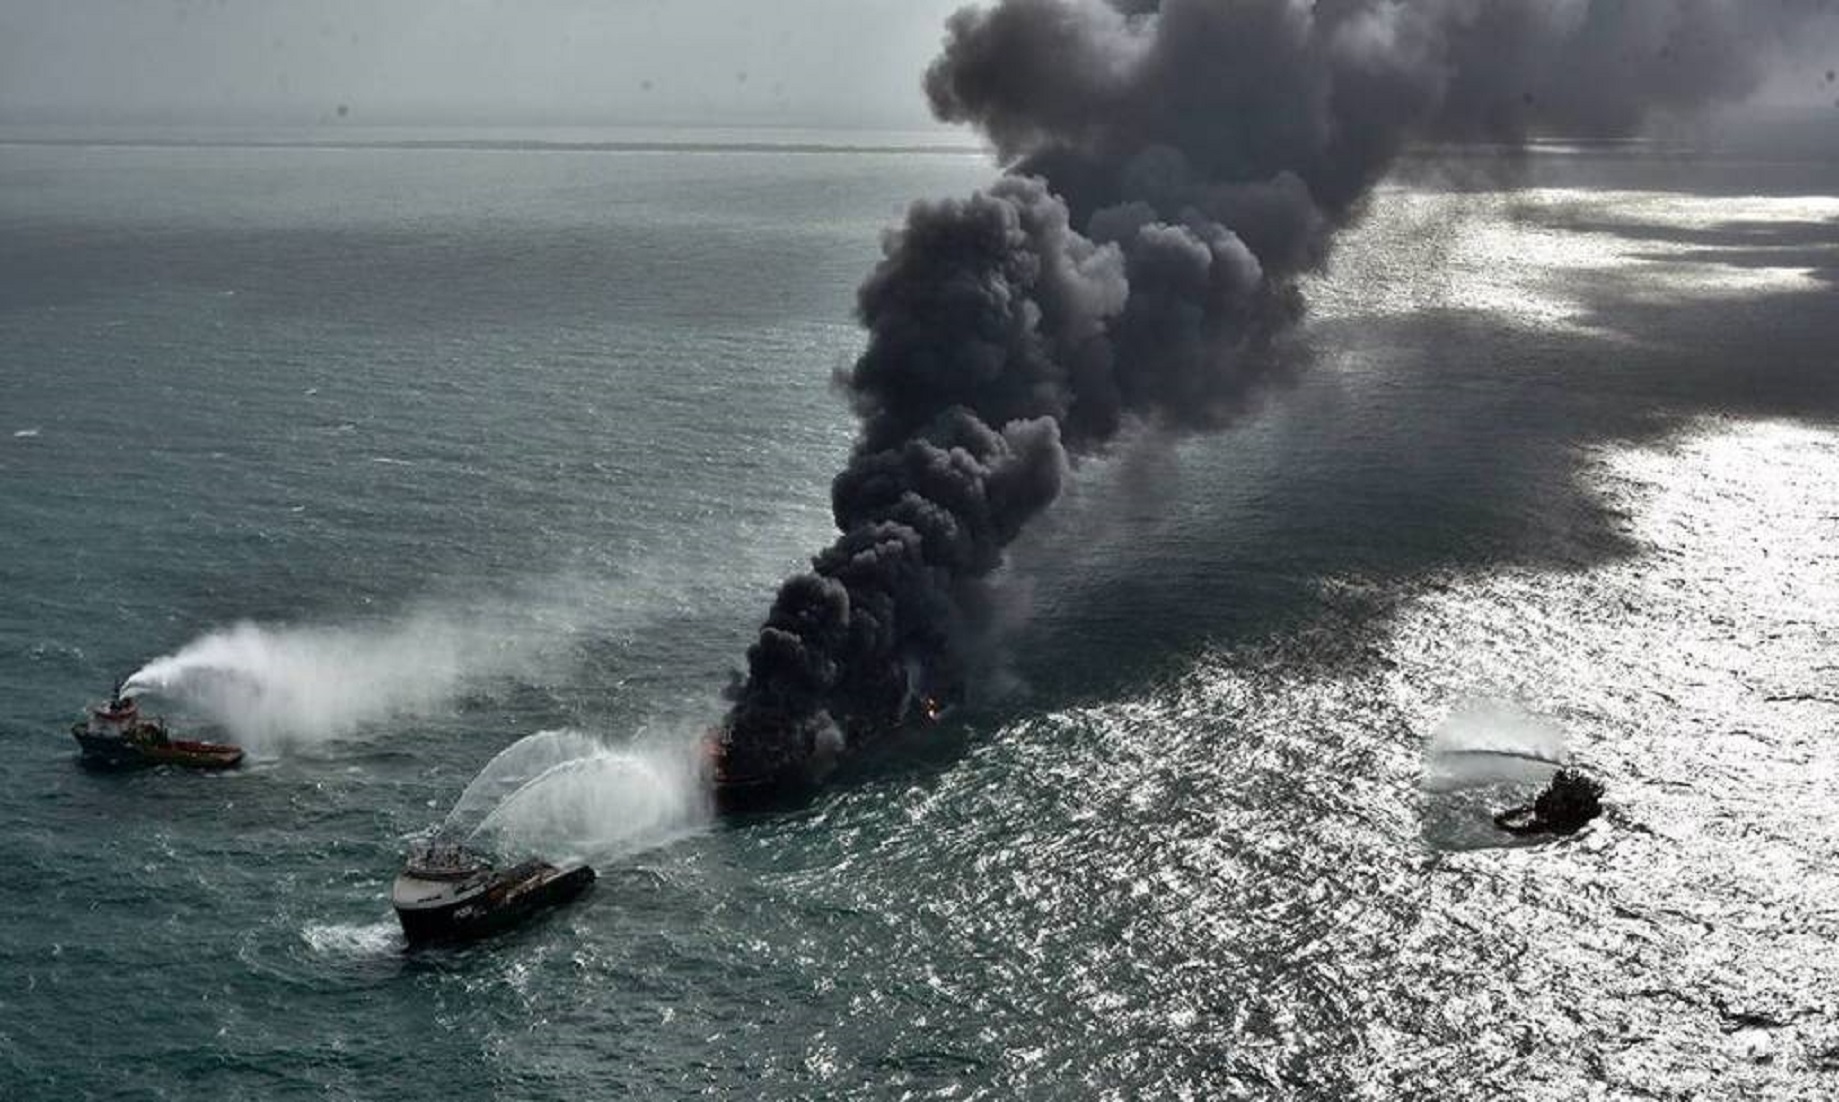 Sri Lanka Monitors Oil Spill From Burning Vessel